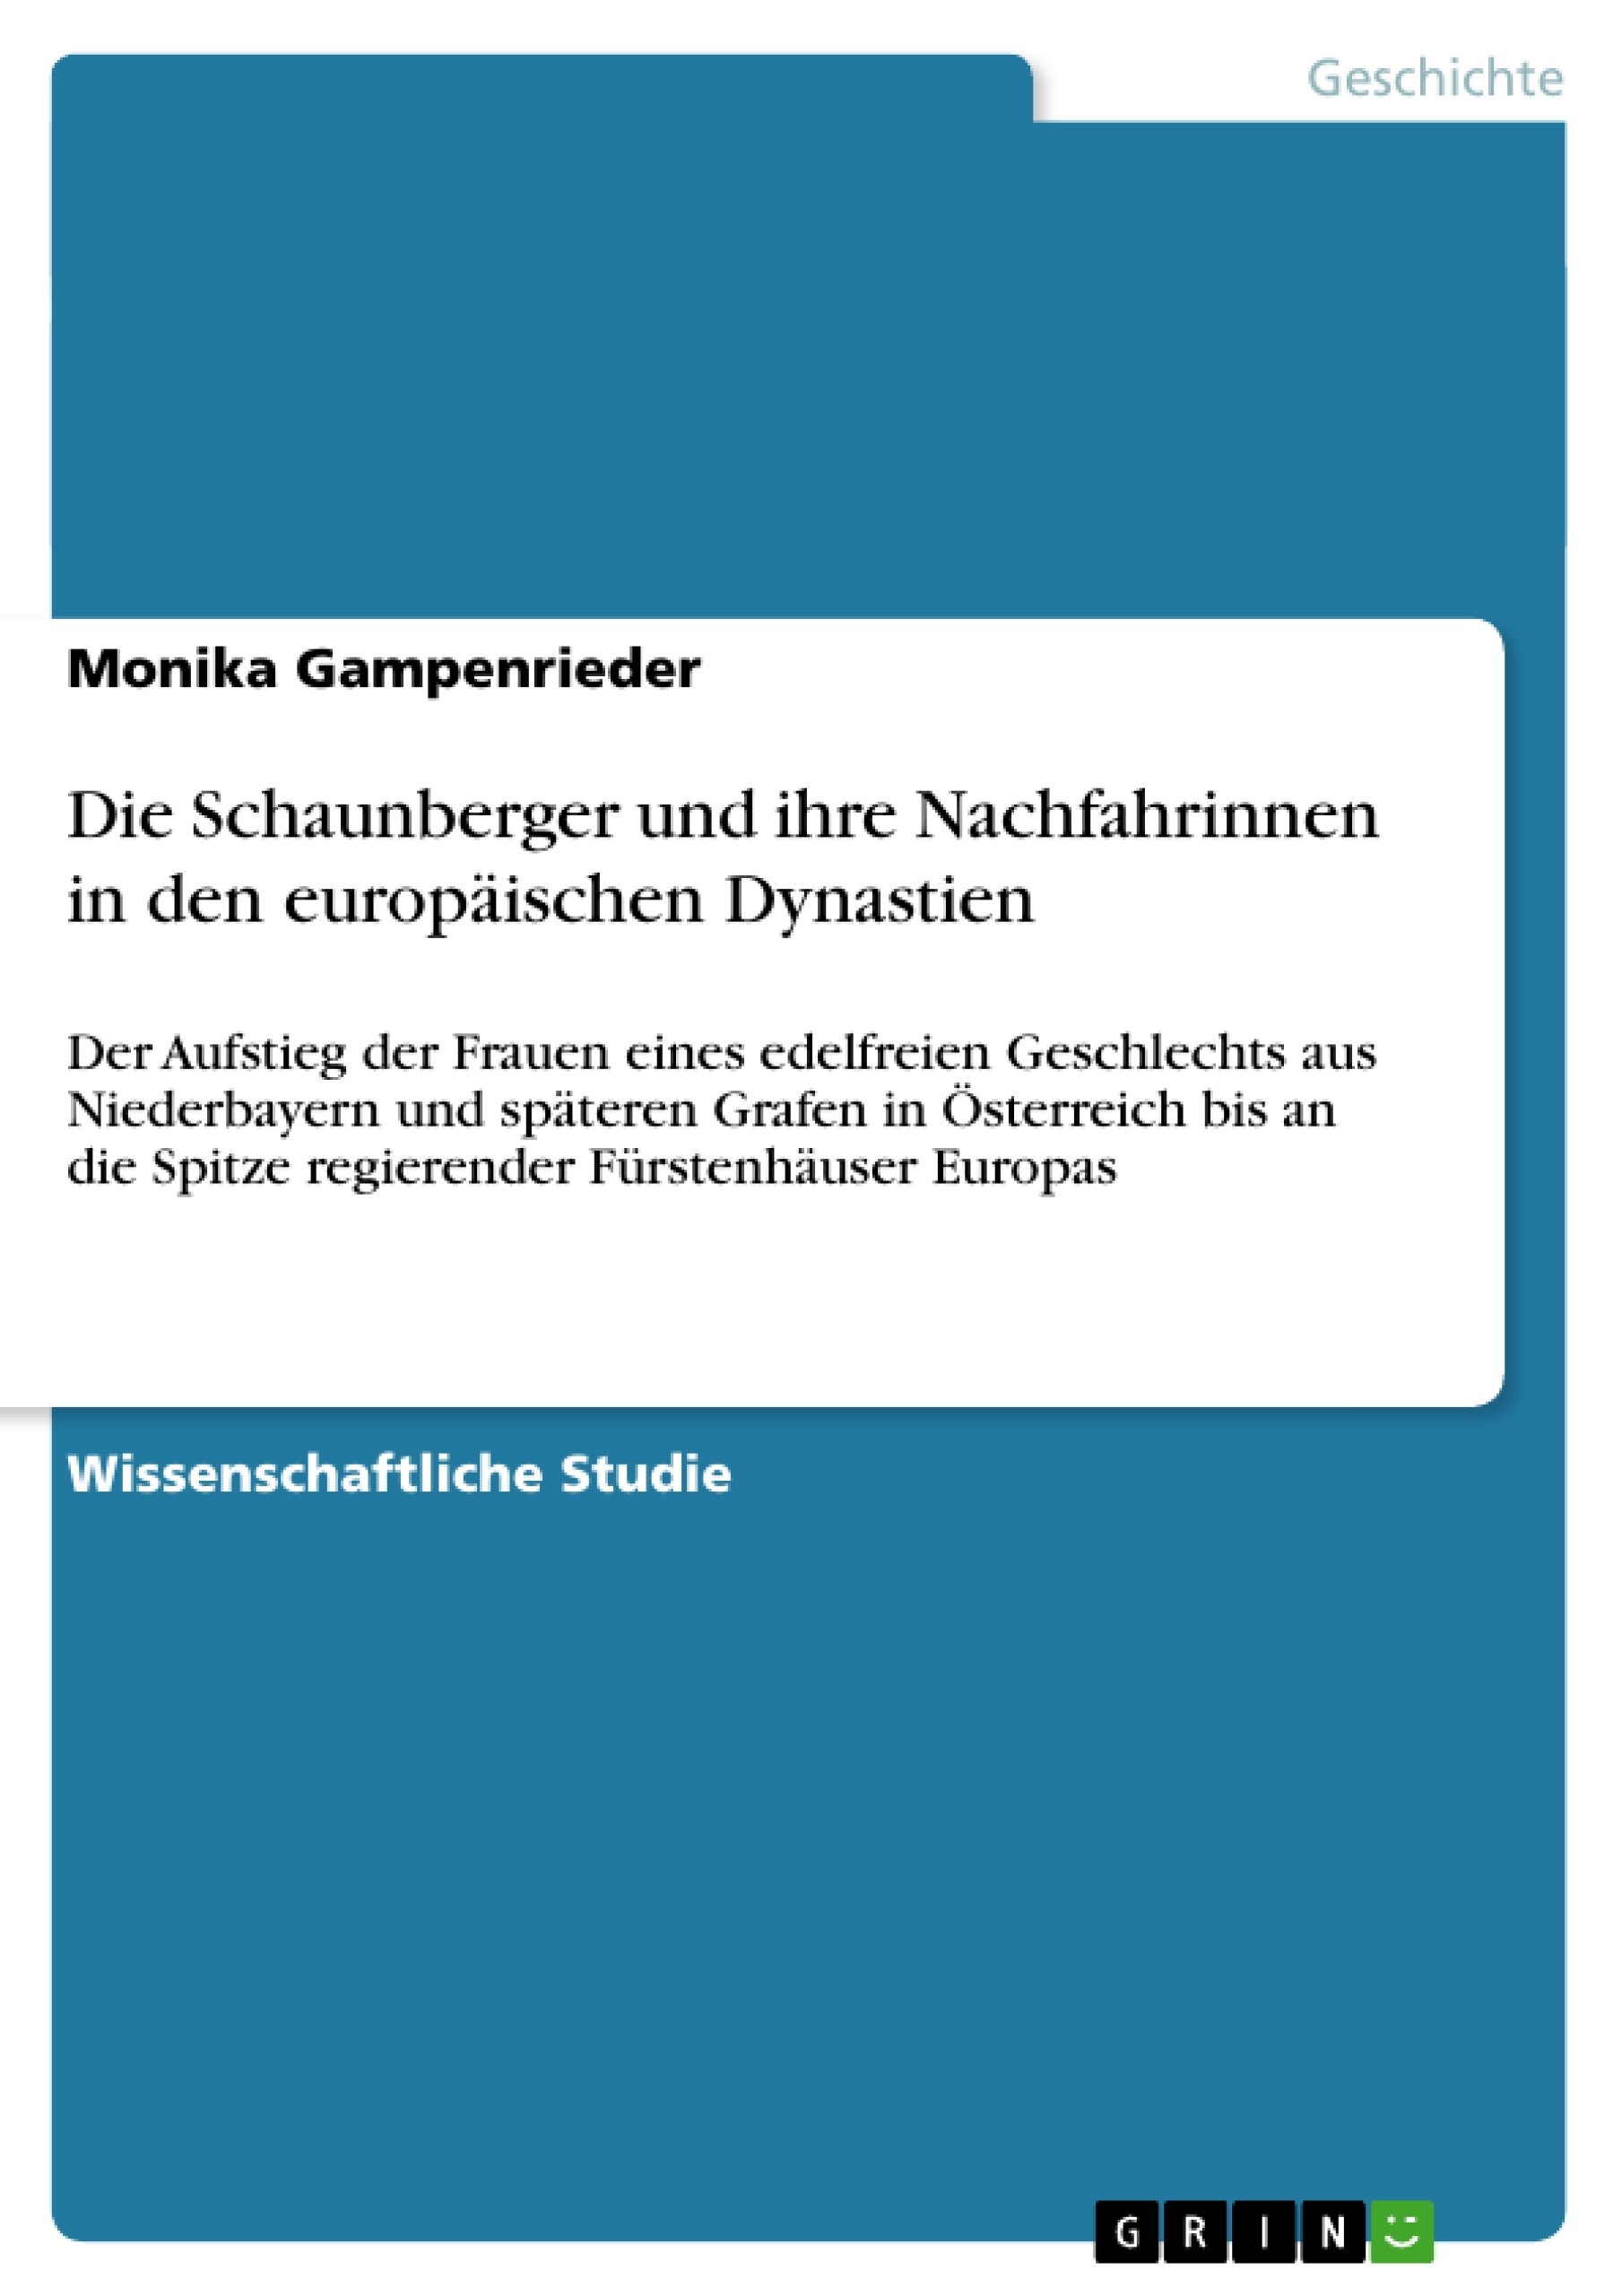 Title: Die Schaunberger und ihre Nachfahrinnen in den europäischen Dynastien